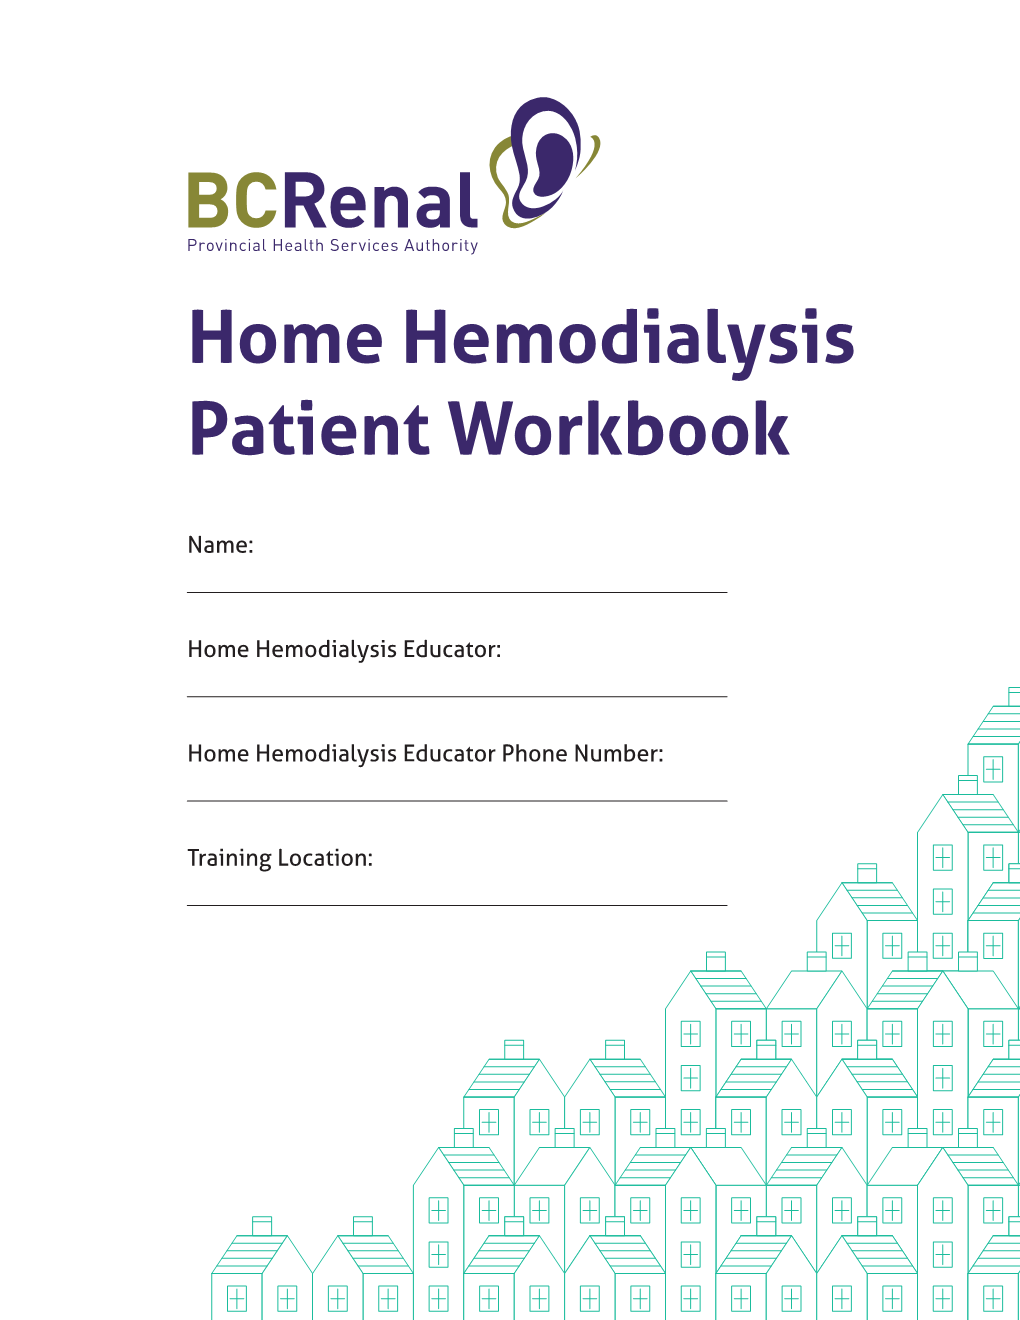 Home Hemodialysis Patient Workbook